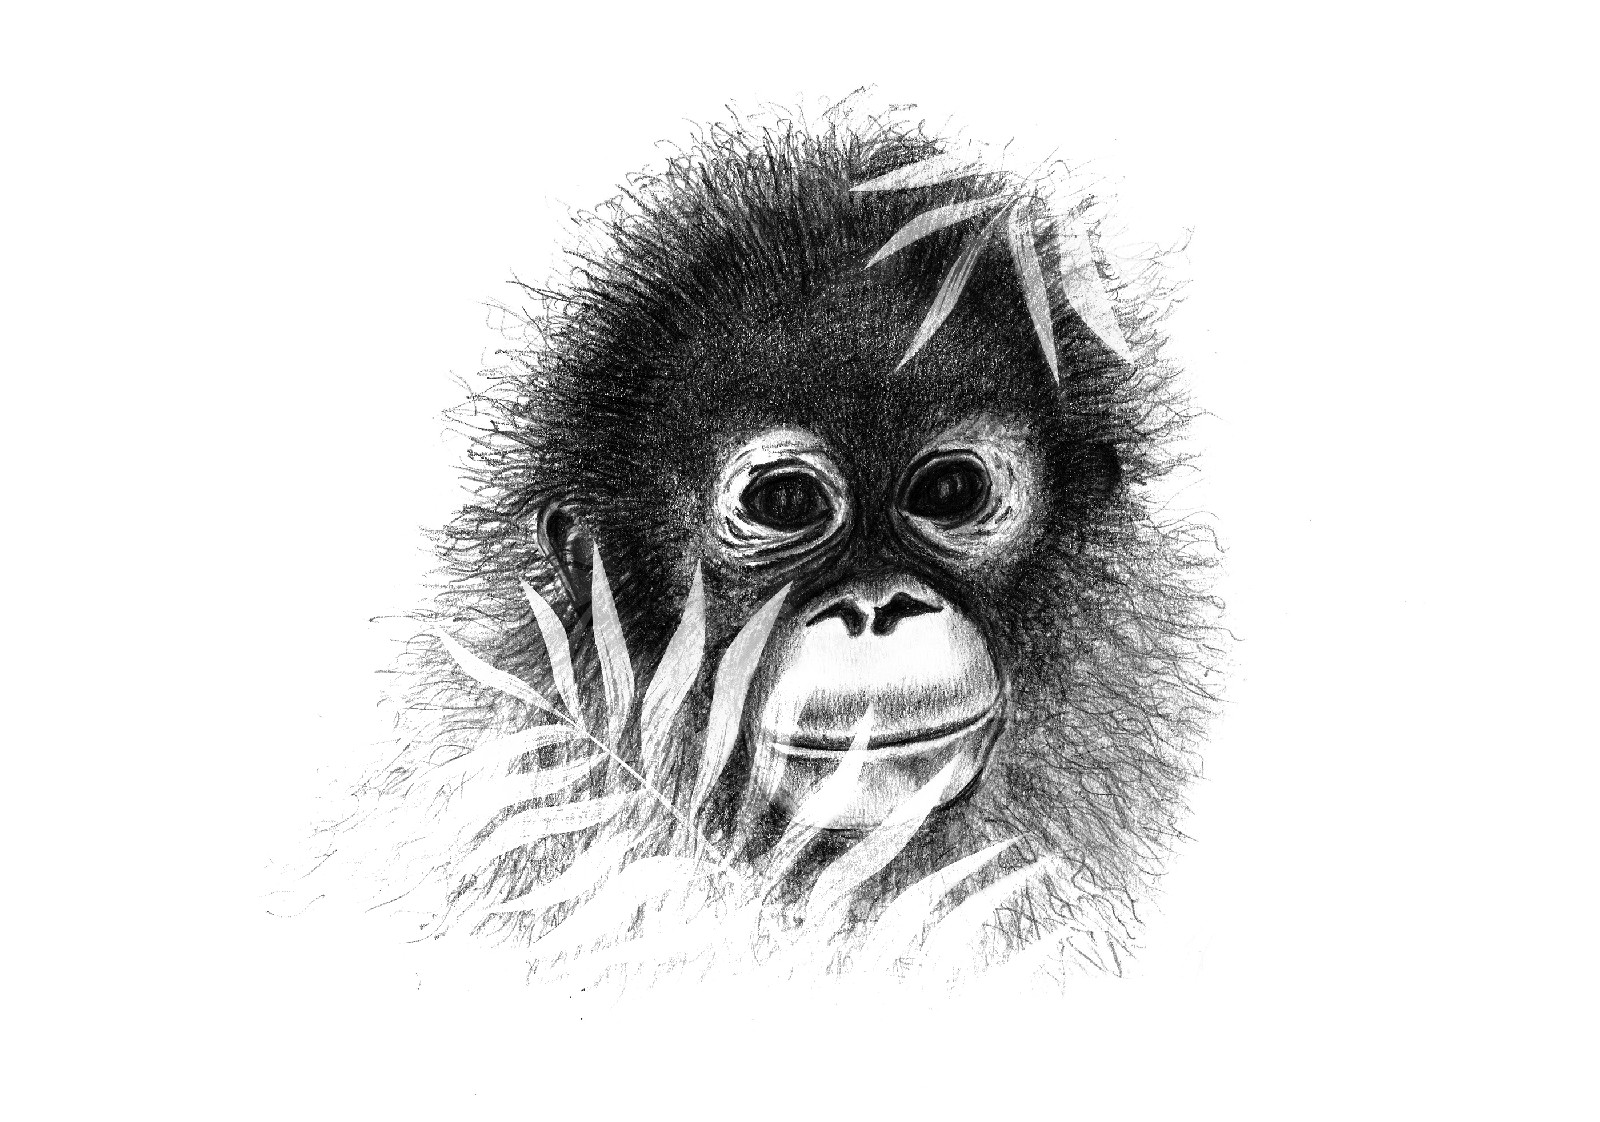 FREEWILD Monkey life illustration